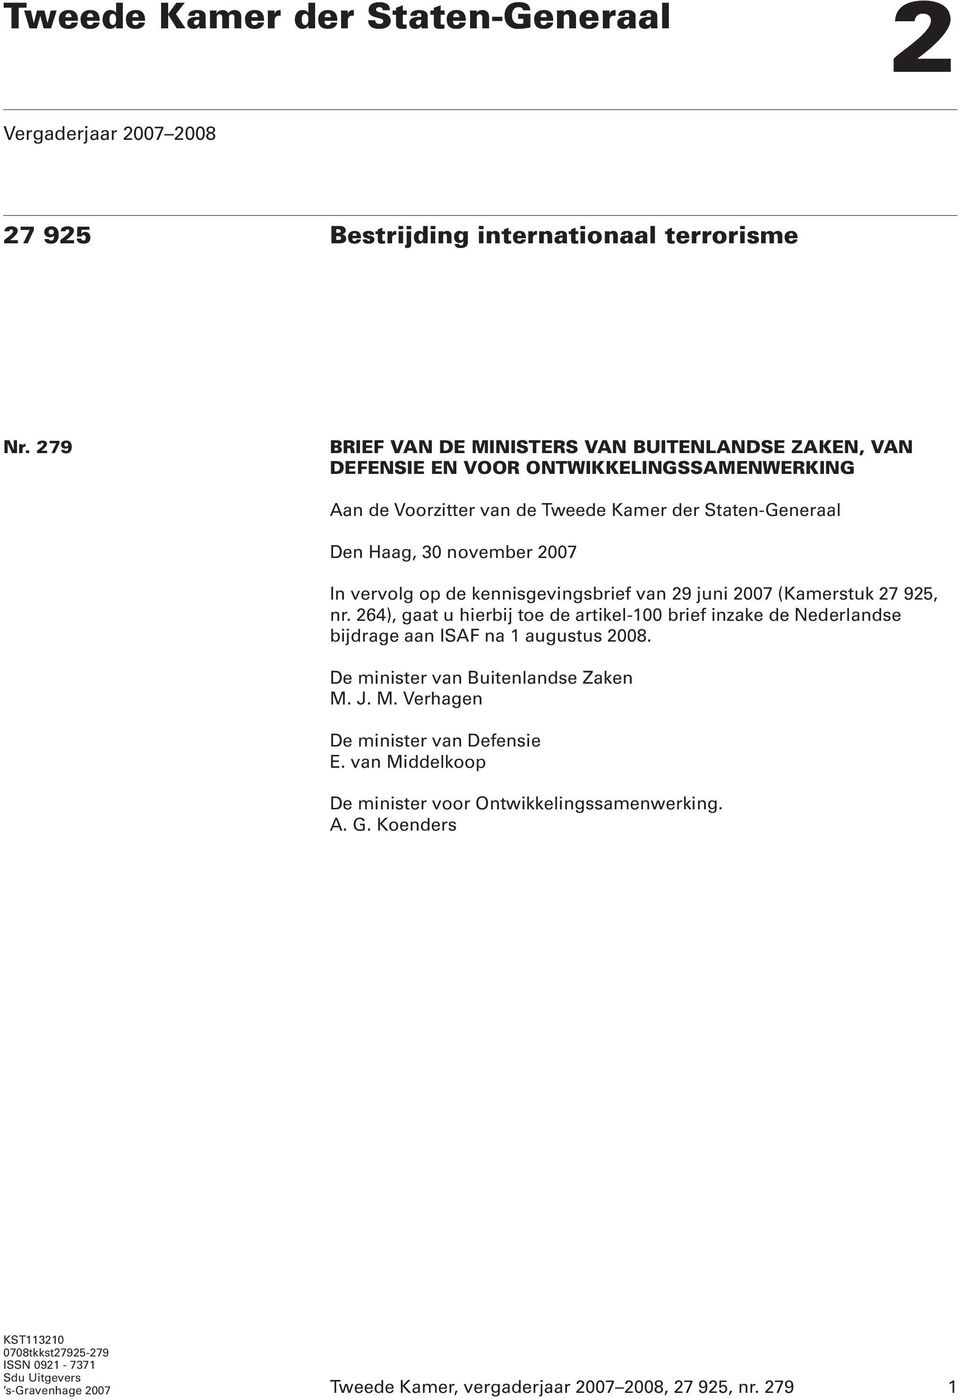 vervolg op de kennisgevingsbrief van 29 juni 2007 (Kamerstuk 27 925, nr. 264), gaat u hierbij toe de artikel-100 brief inzake de Nederlandse bijdrage aan ISAF na 1 augustus 2008.